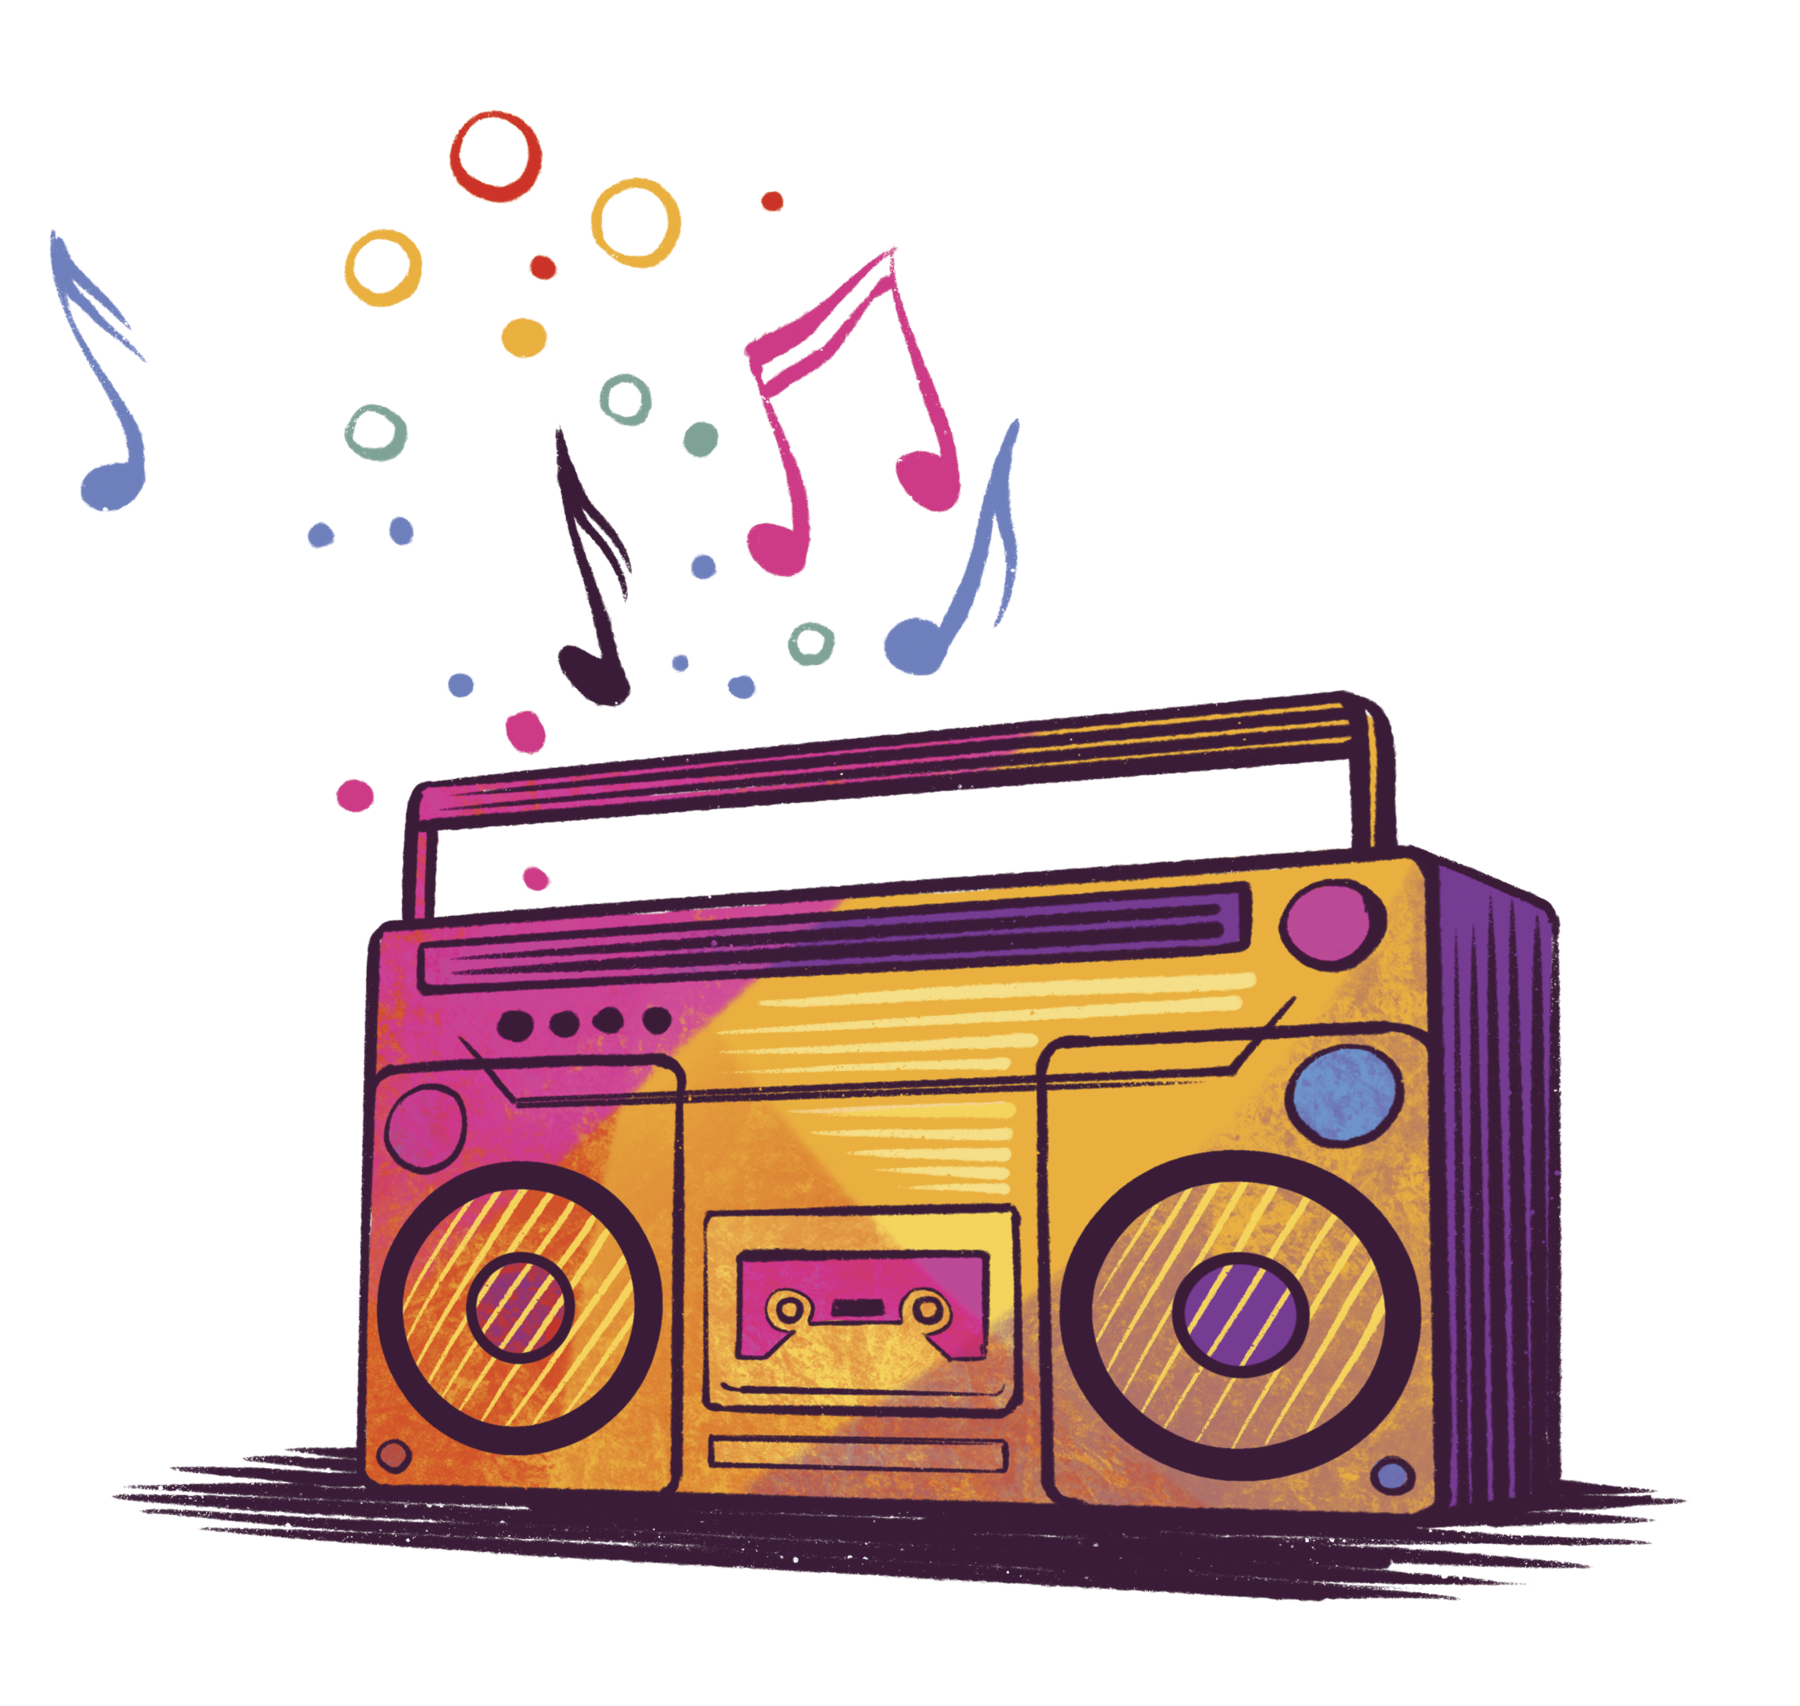 Ilustração. Aparelho de rádio com tocador de fita cassete na horizontal em tons de laranja, com dois botões um em azul-claro e rosa. Na ponta à esquerda acima do rádio, notas musicais e círculos pequenos coloridos.